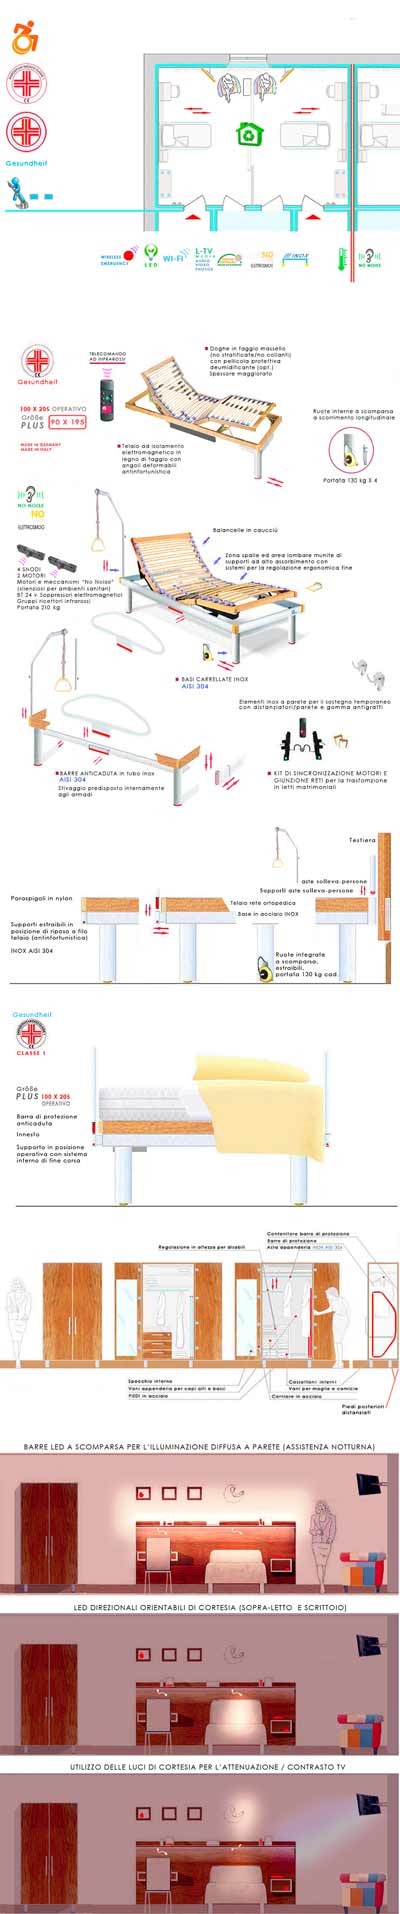 Arredamenti per case di riposo-arredo case protette per anziani-IB IB STUDIO di progettazione Italian Design